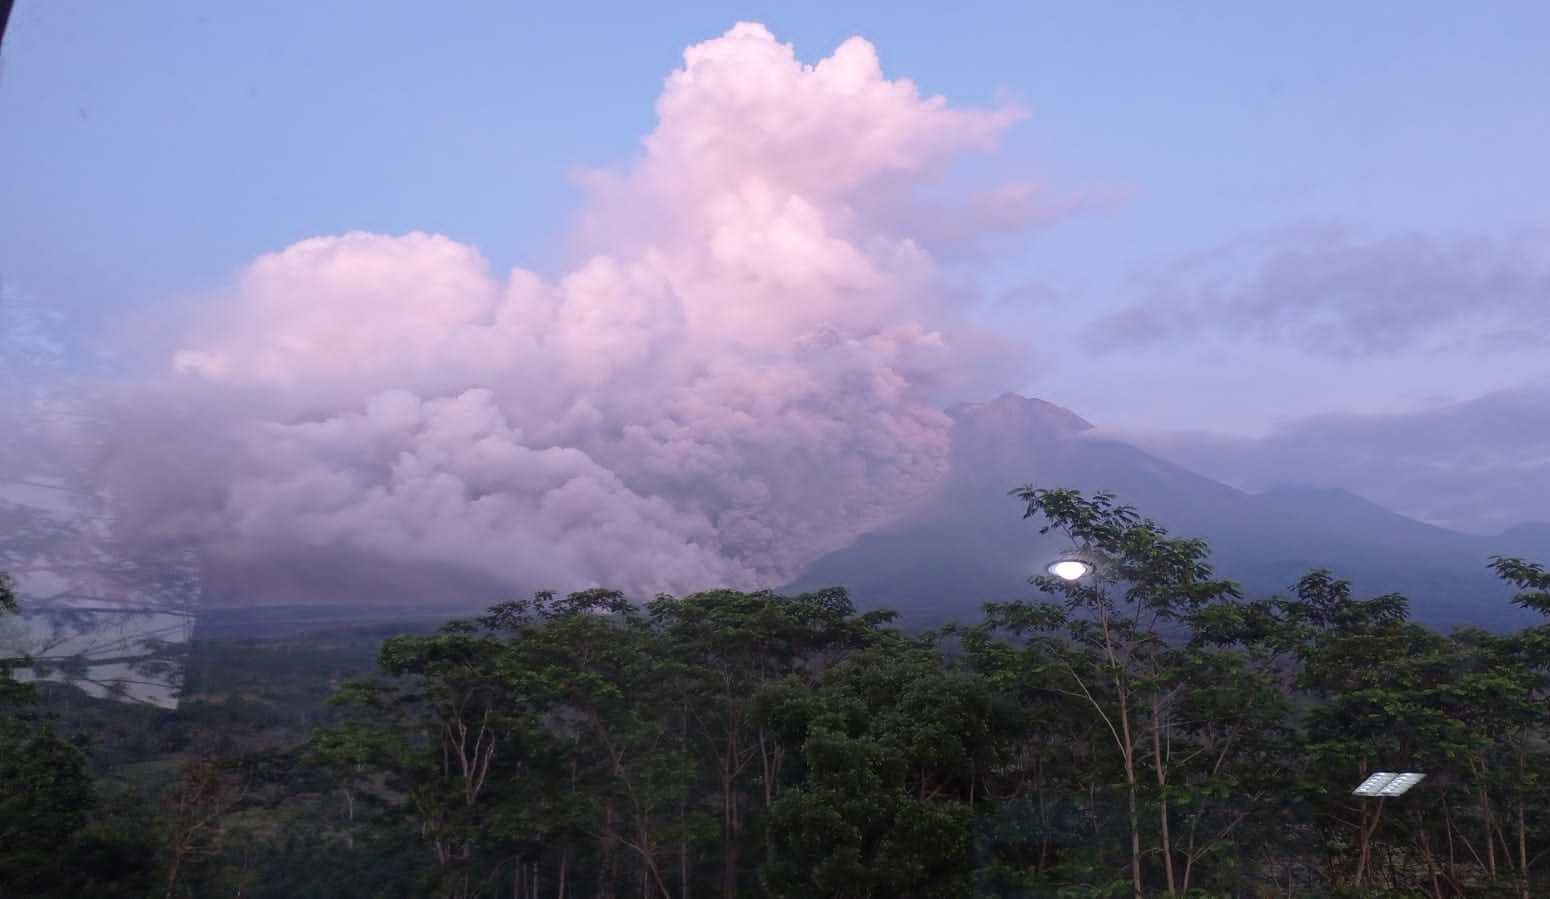 Status Gunung Semeru Awas, Warga Diminta Menyelamatkan Diri